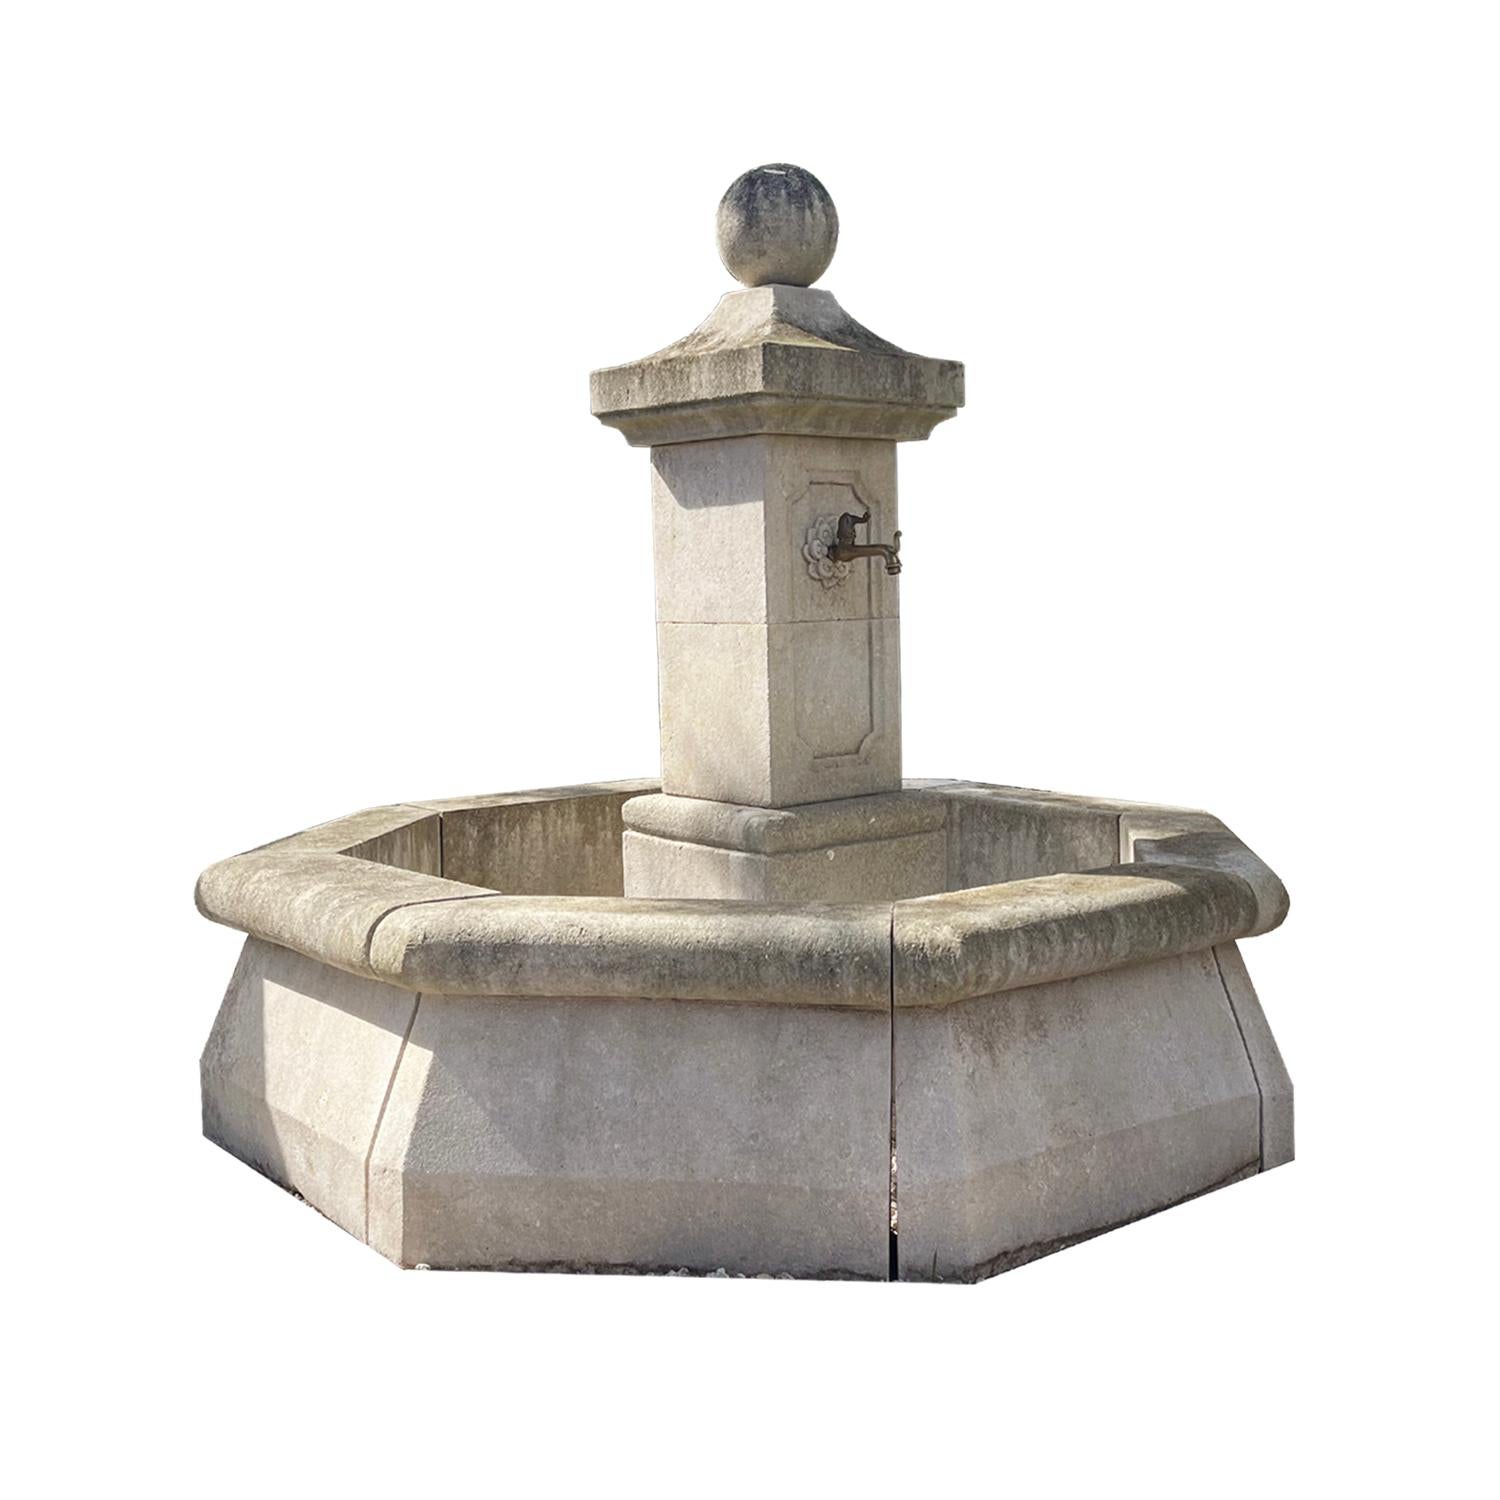 Der sehr traditionelle achteckige Gartenbrunnen wurde nach einem Original aus dem 18. Jahrhundert (fountain du reservoir) von Hand in Kalkstein gehauen und ist noch heute in den französischen Dörfern zu sehen. Dieser provenzalische Springbrunnen hat